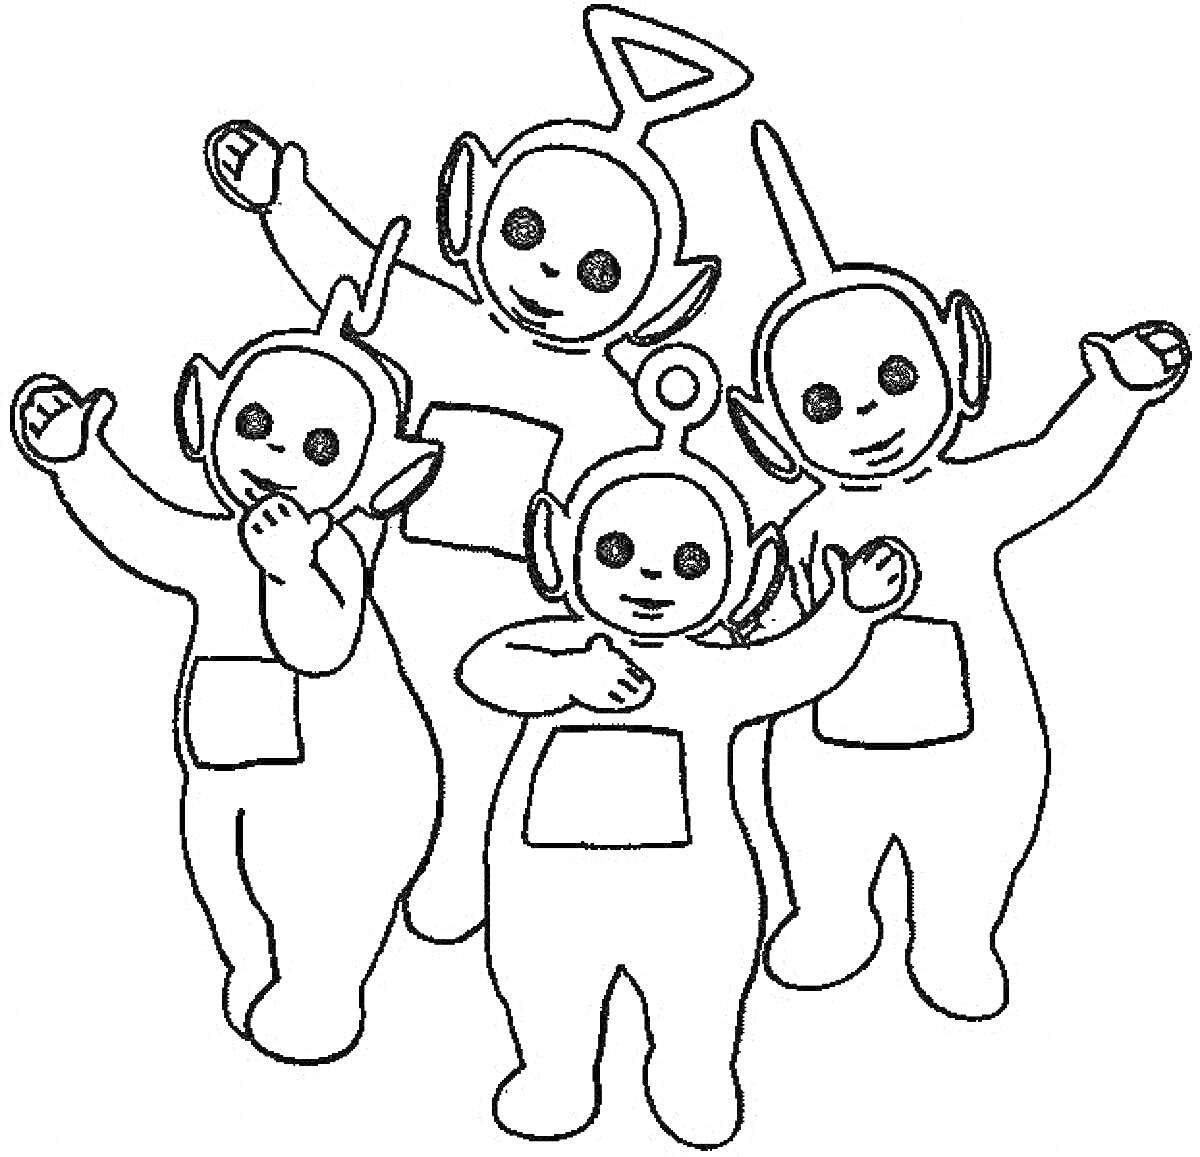 Раскраска Телепузики: четыре персонажа в полный рост с антеннами на головах